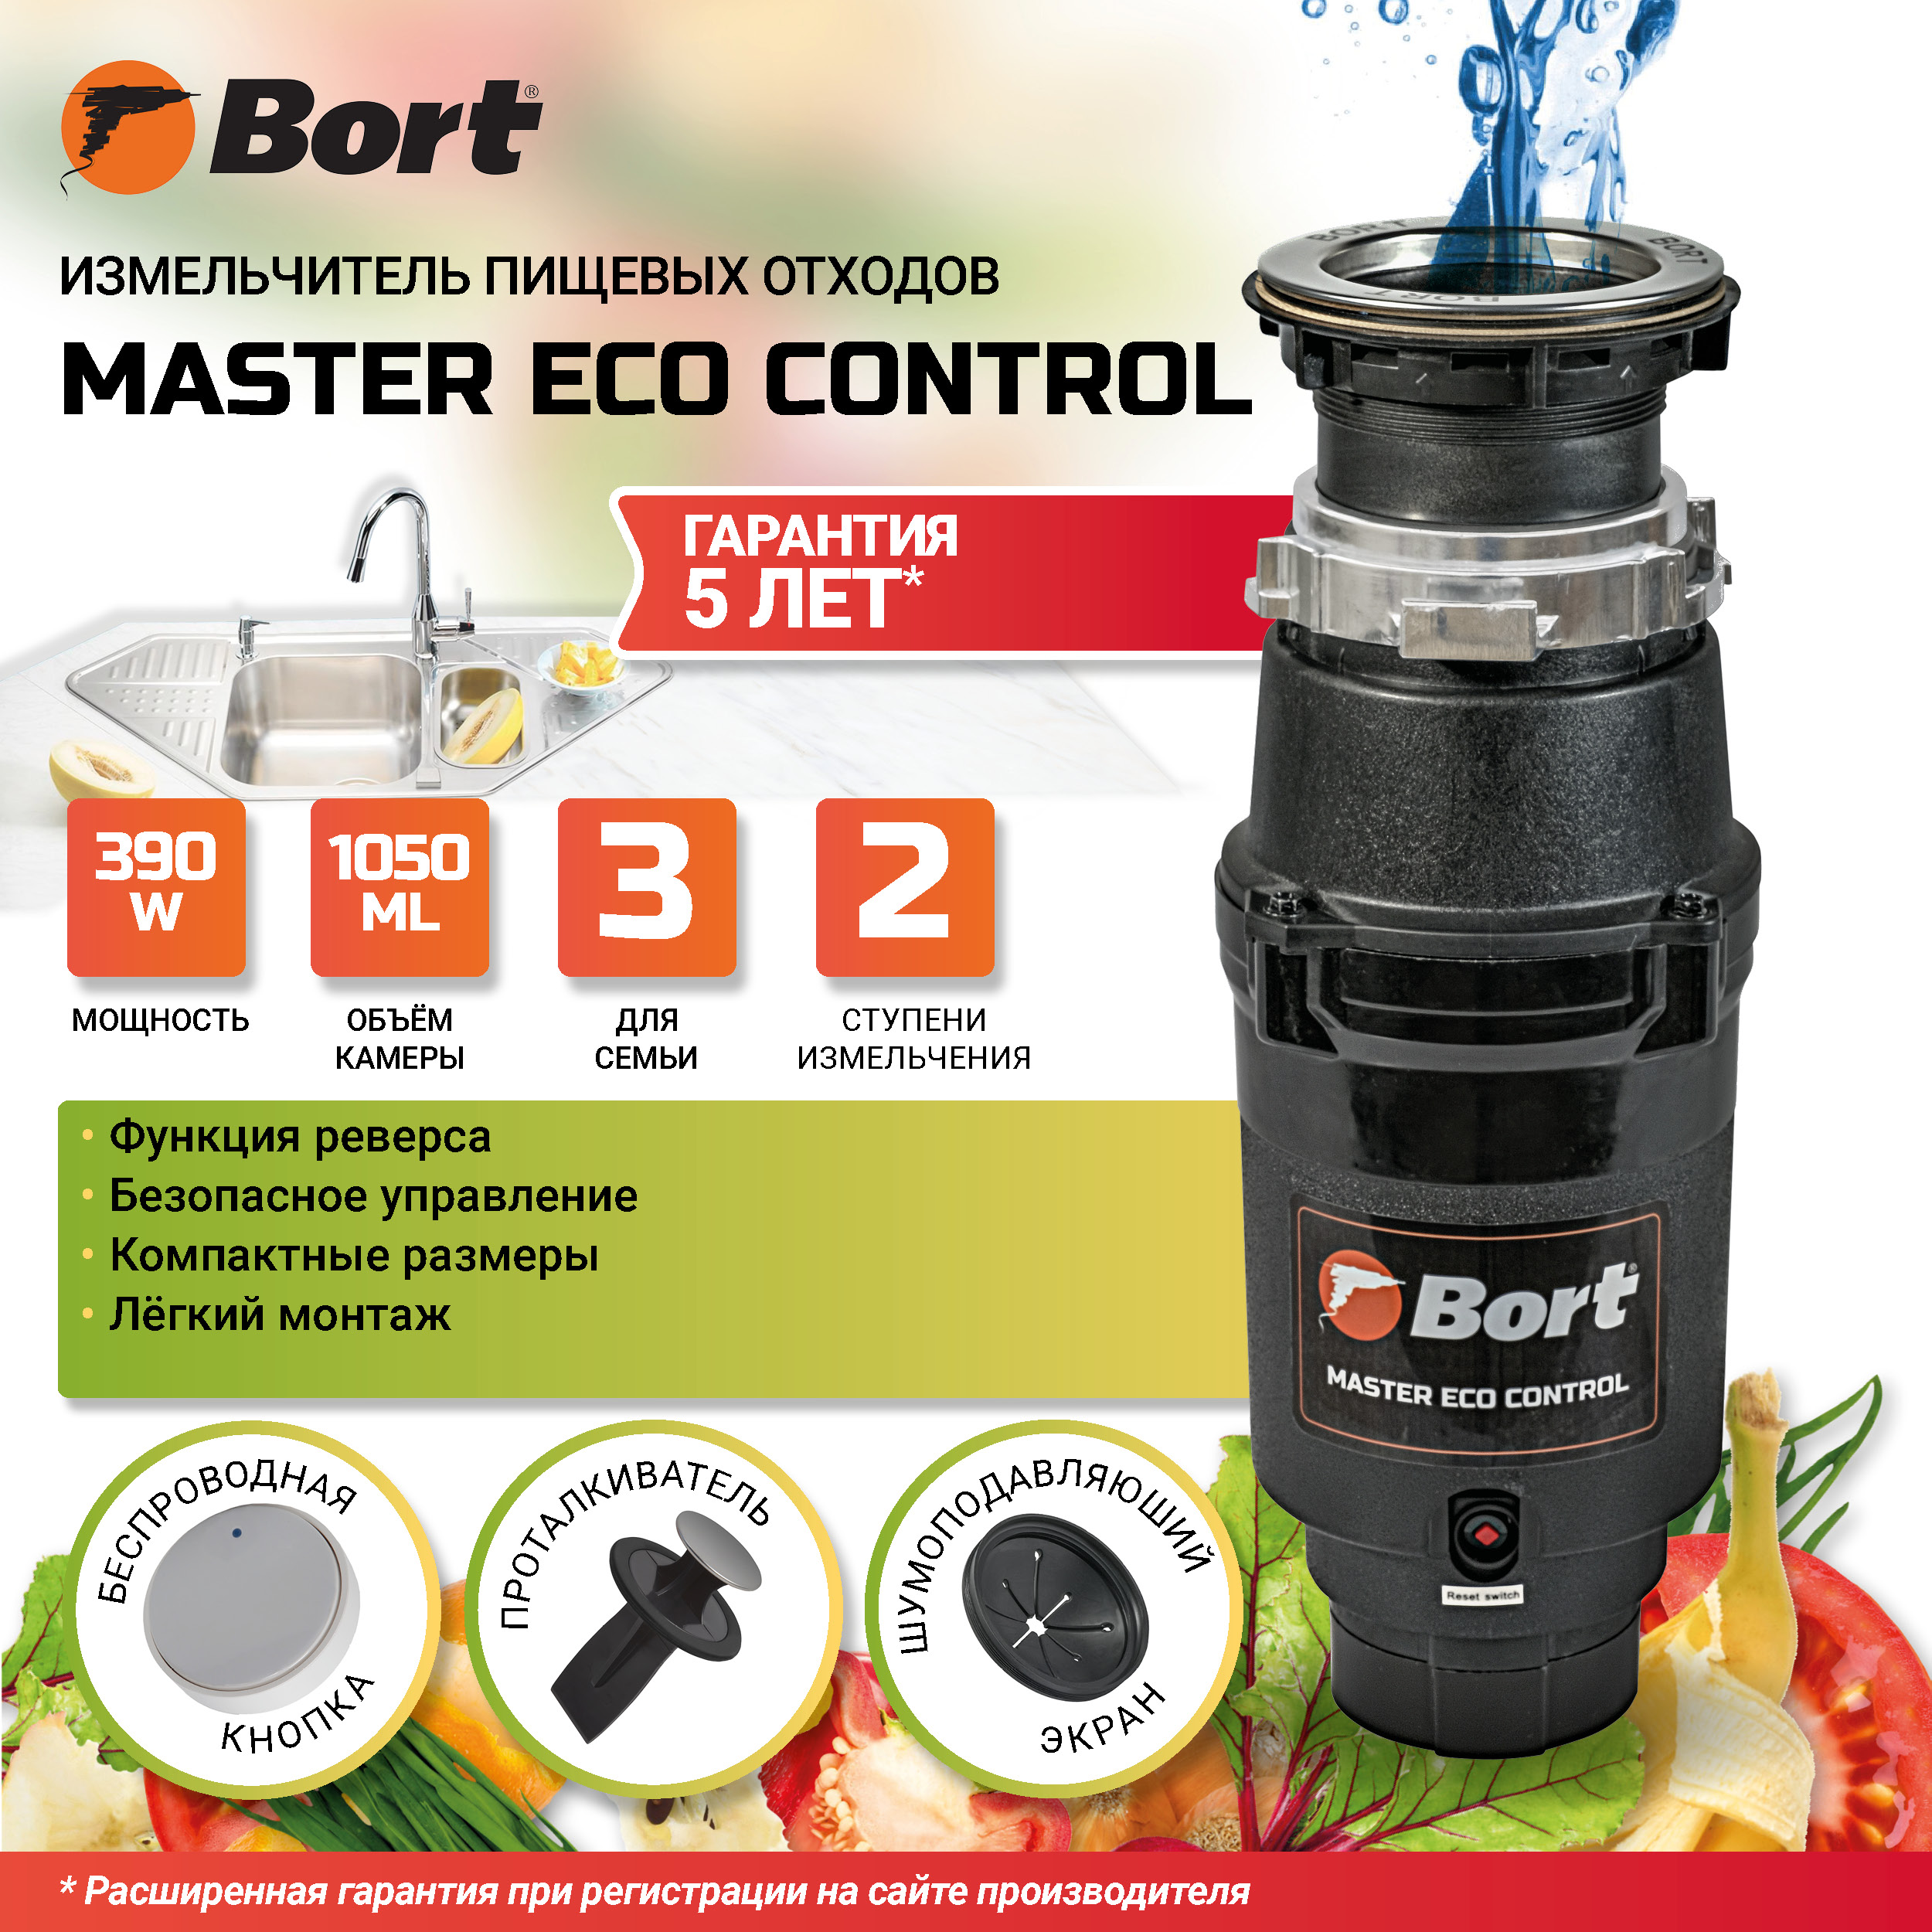 Измельчитель пищевых отходов BORT MASTER ECO Control измельчитель stiga bio master 2200